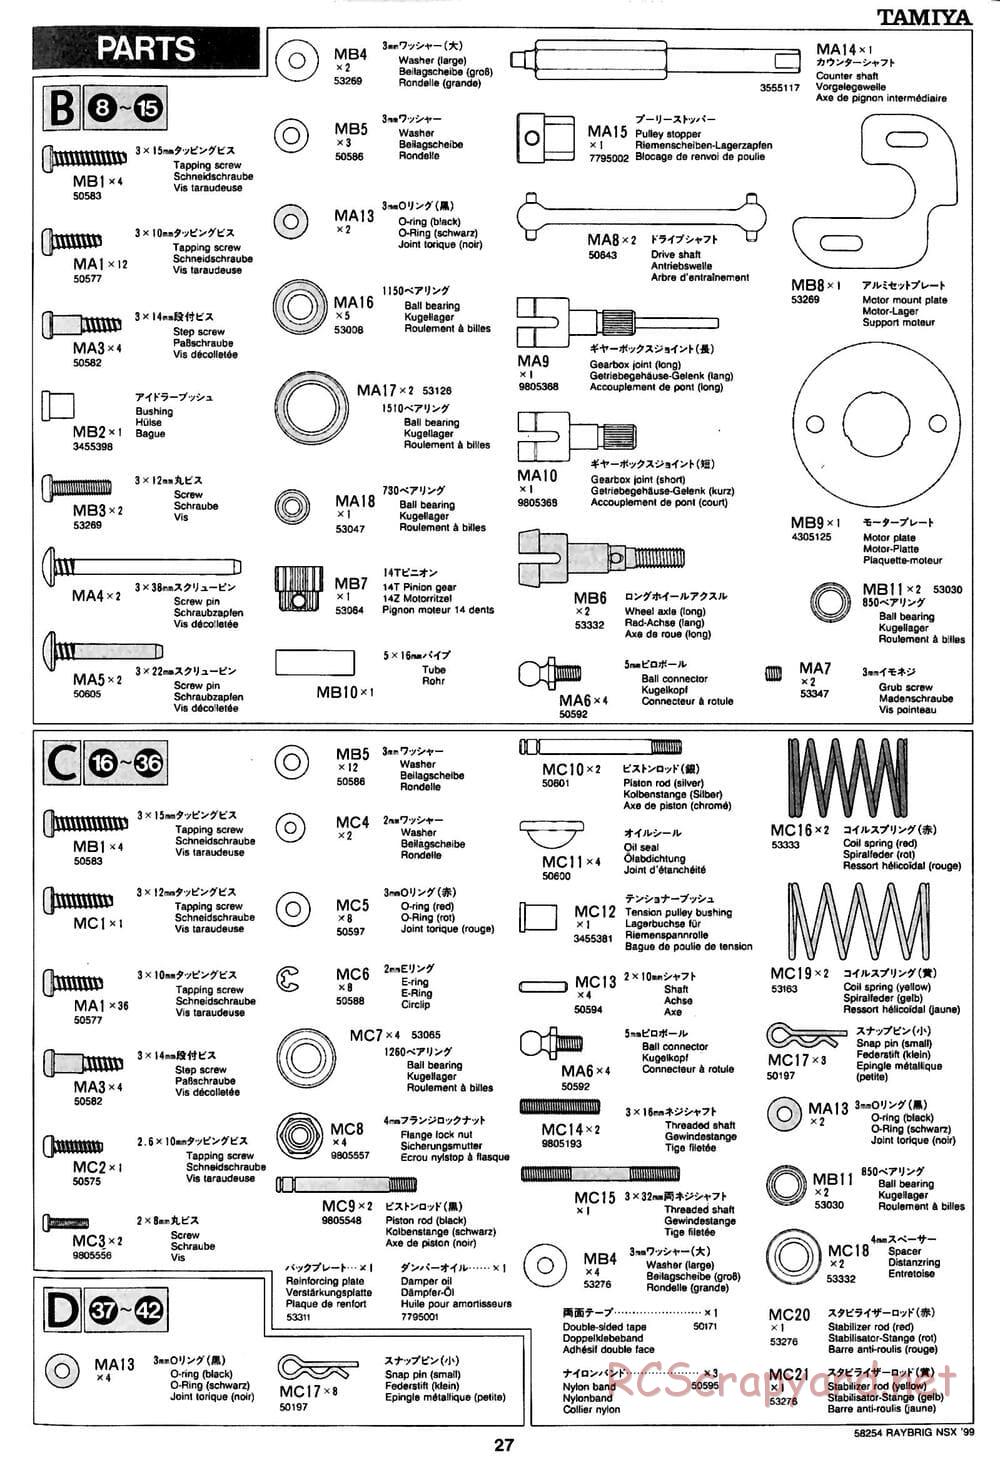 Tamiya - Raybrig NSX 99 - TA-03R Chassis - Manual - Page 27